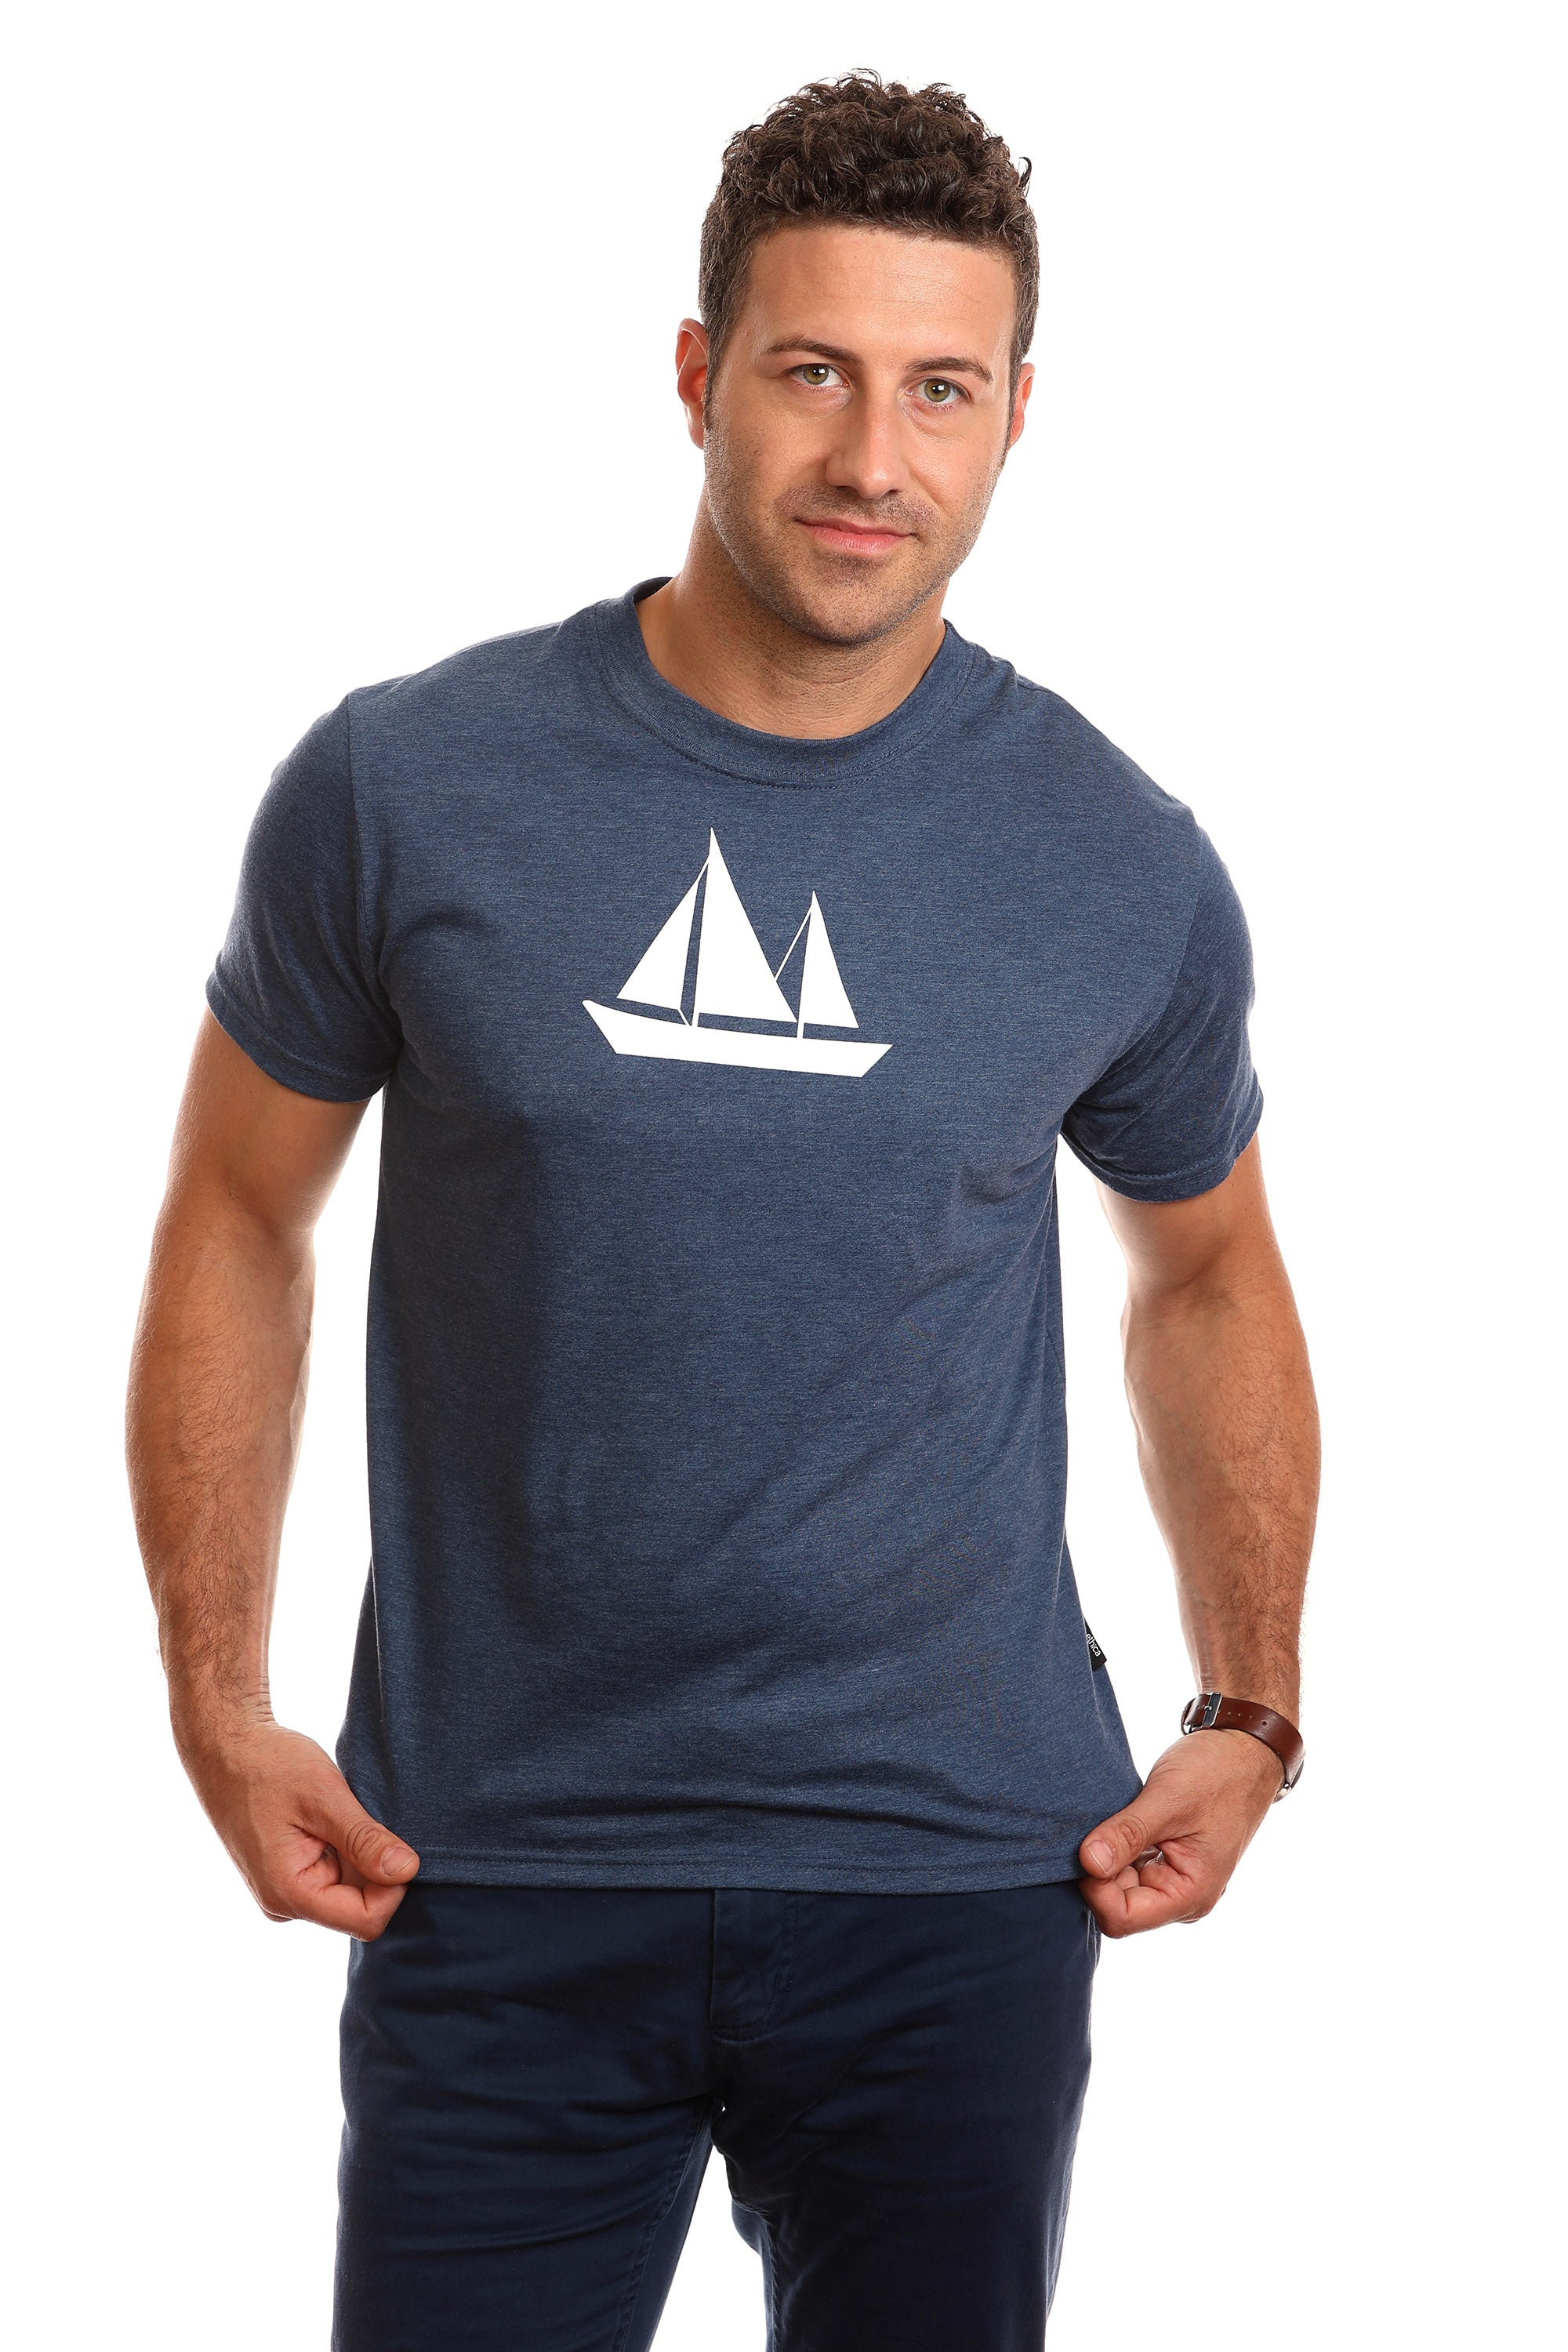 Men's Sailing Shirts, T-Shirts & Polos